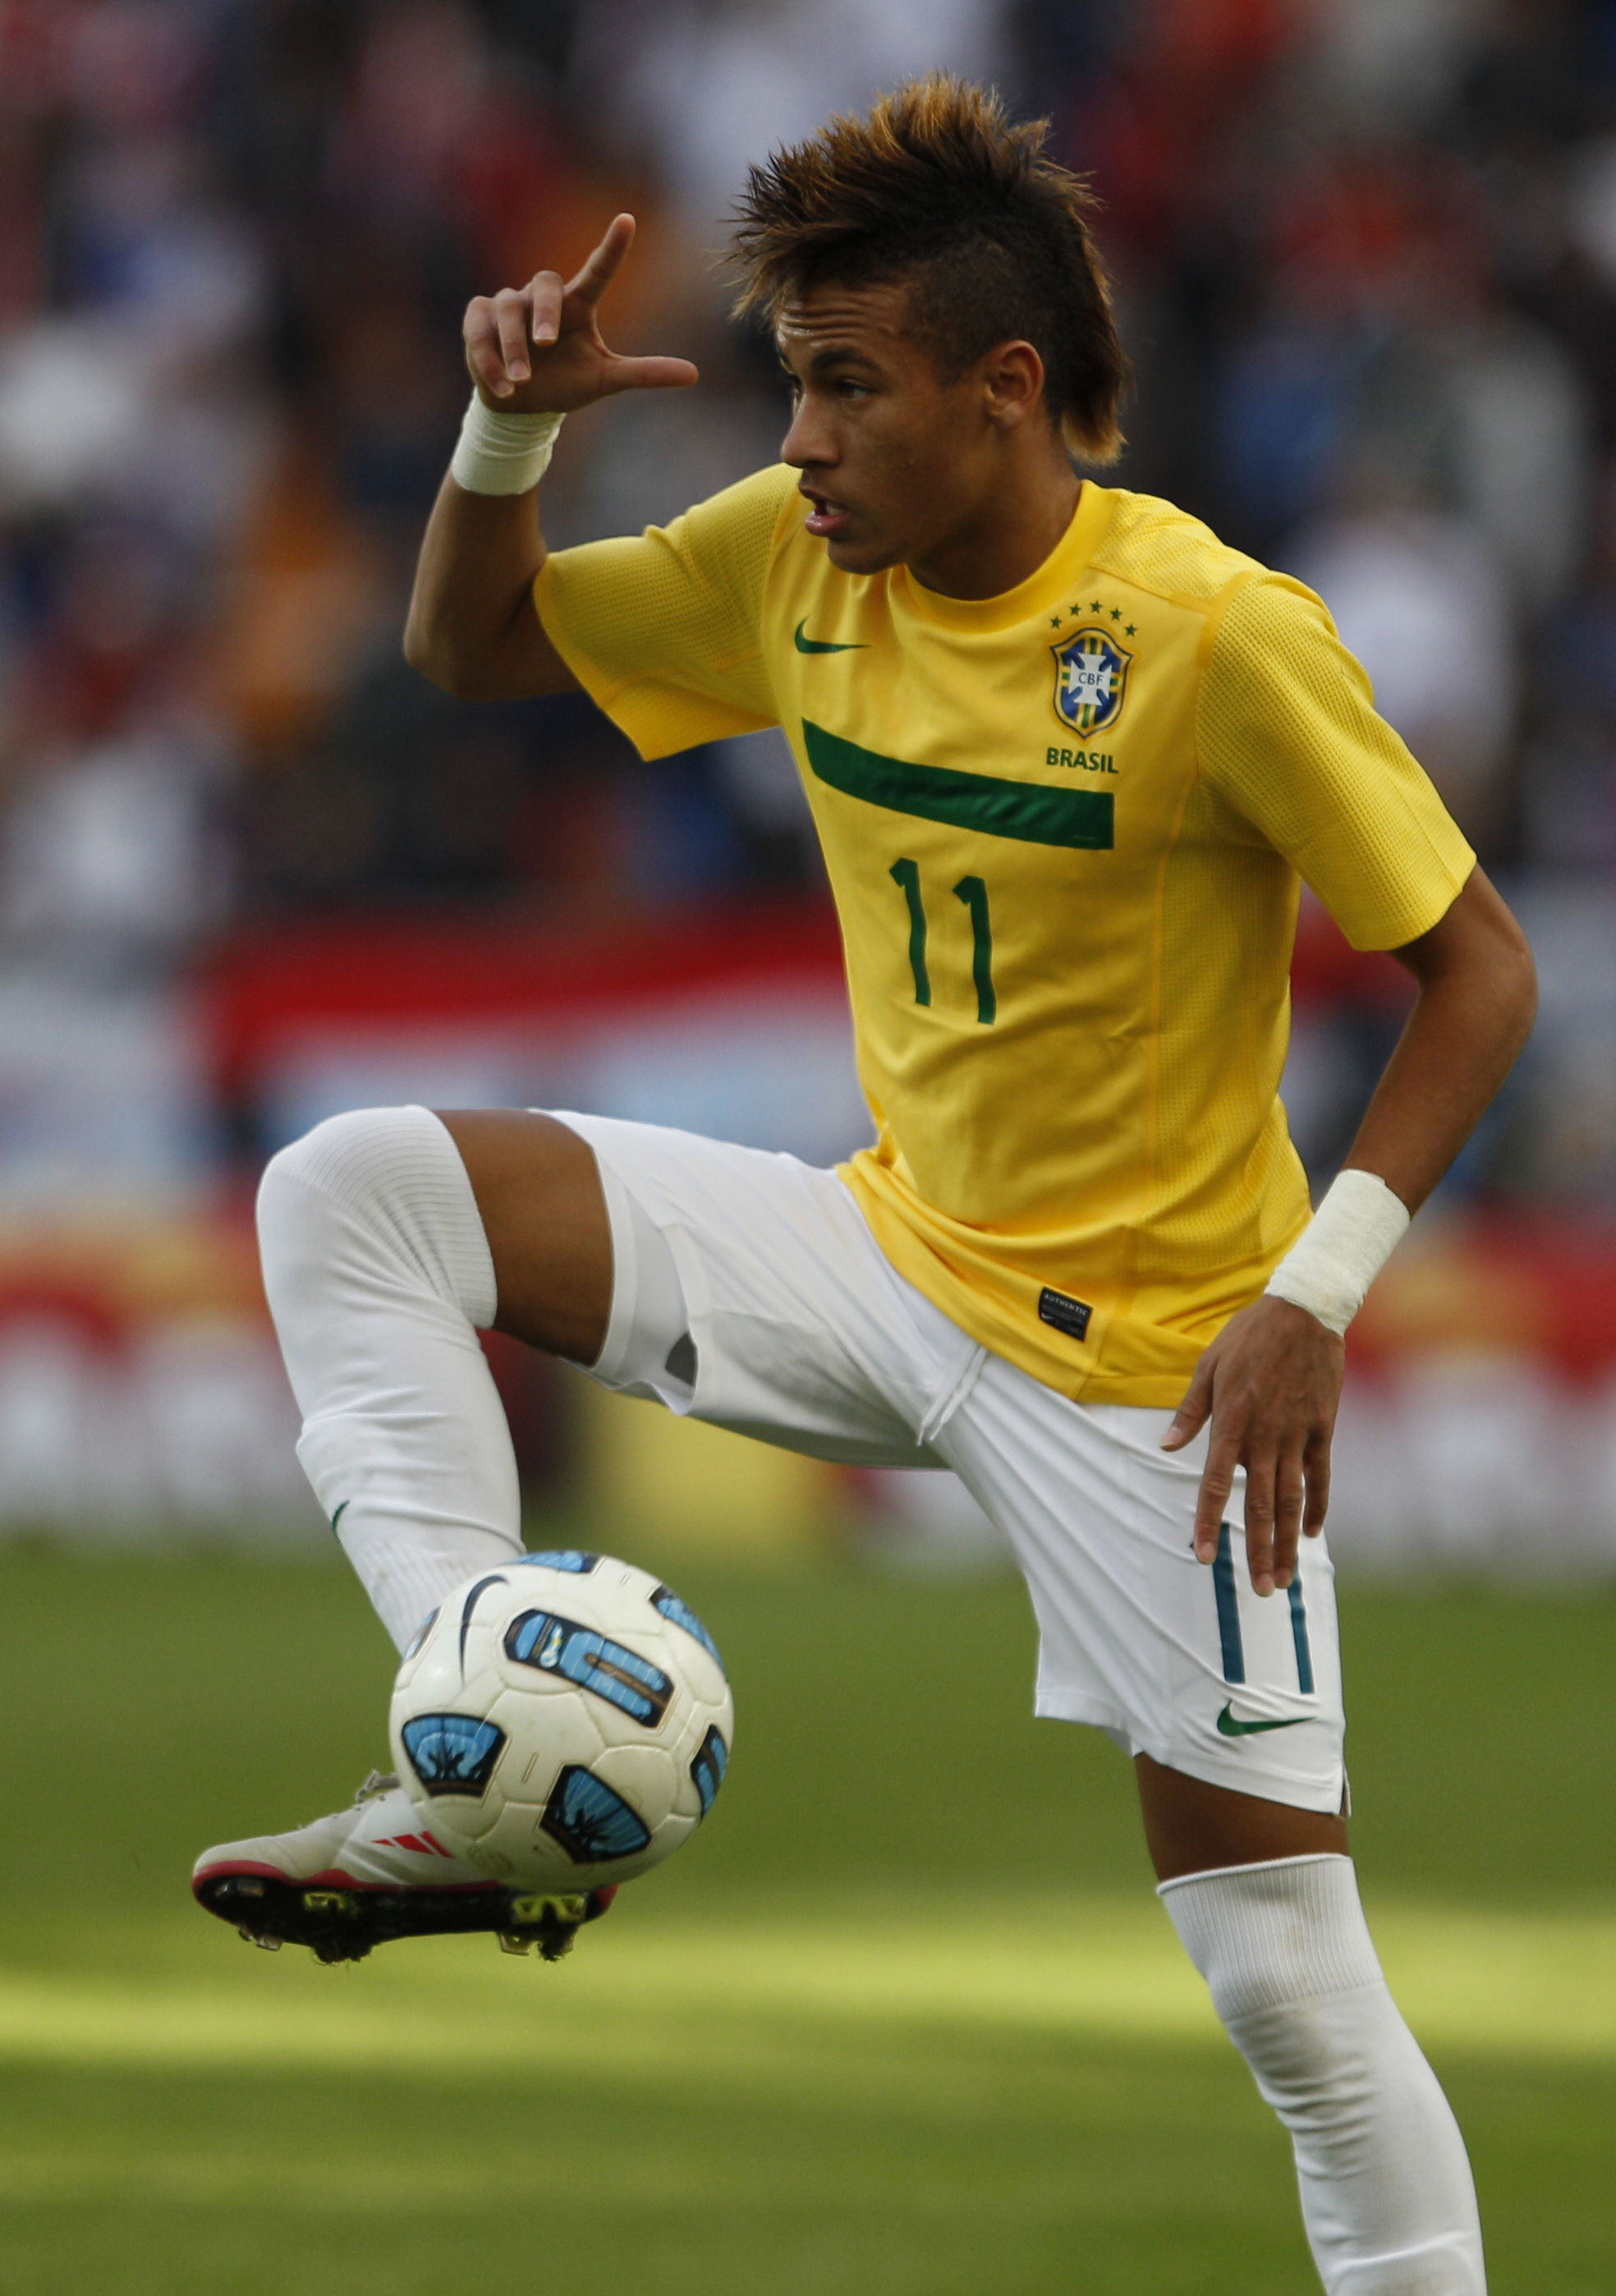 Det brasilianska folket undrar två saker: kommer Neymar att leverara? och hur kommer gräsmattorna att se ut?